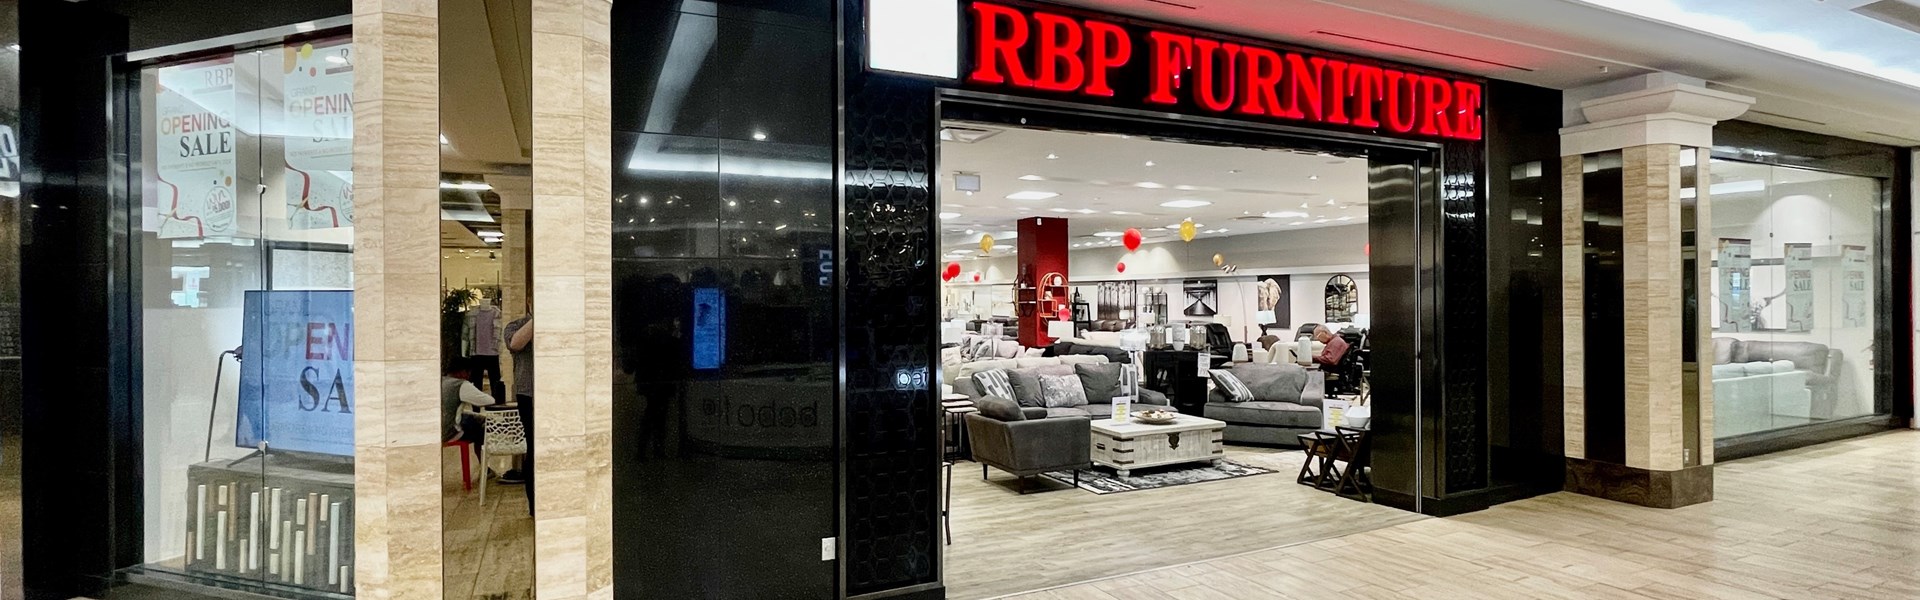 RBP Furniture